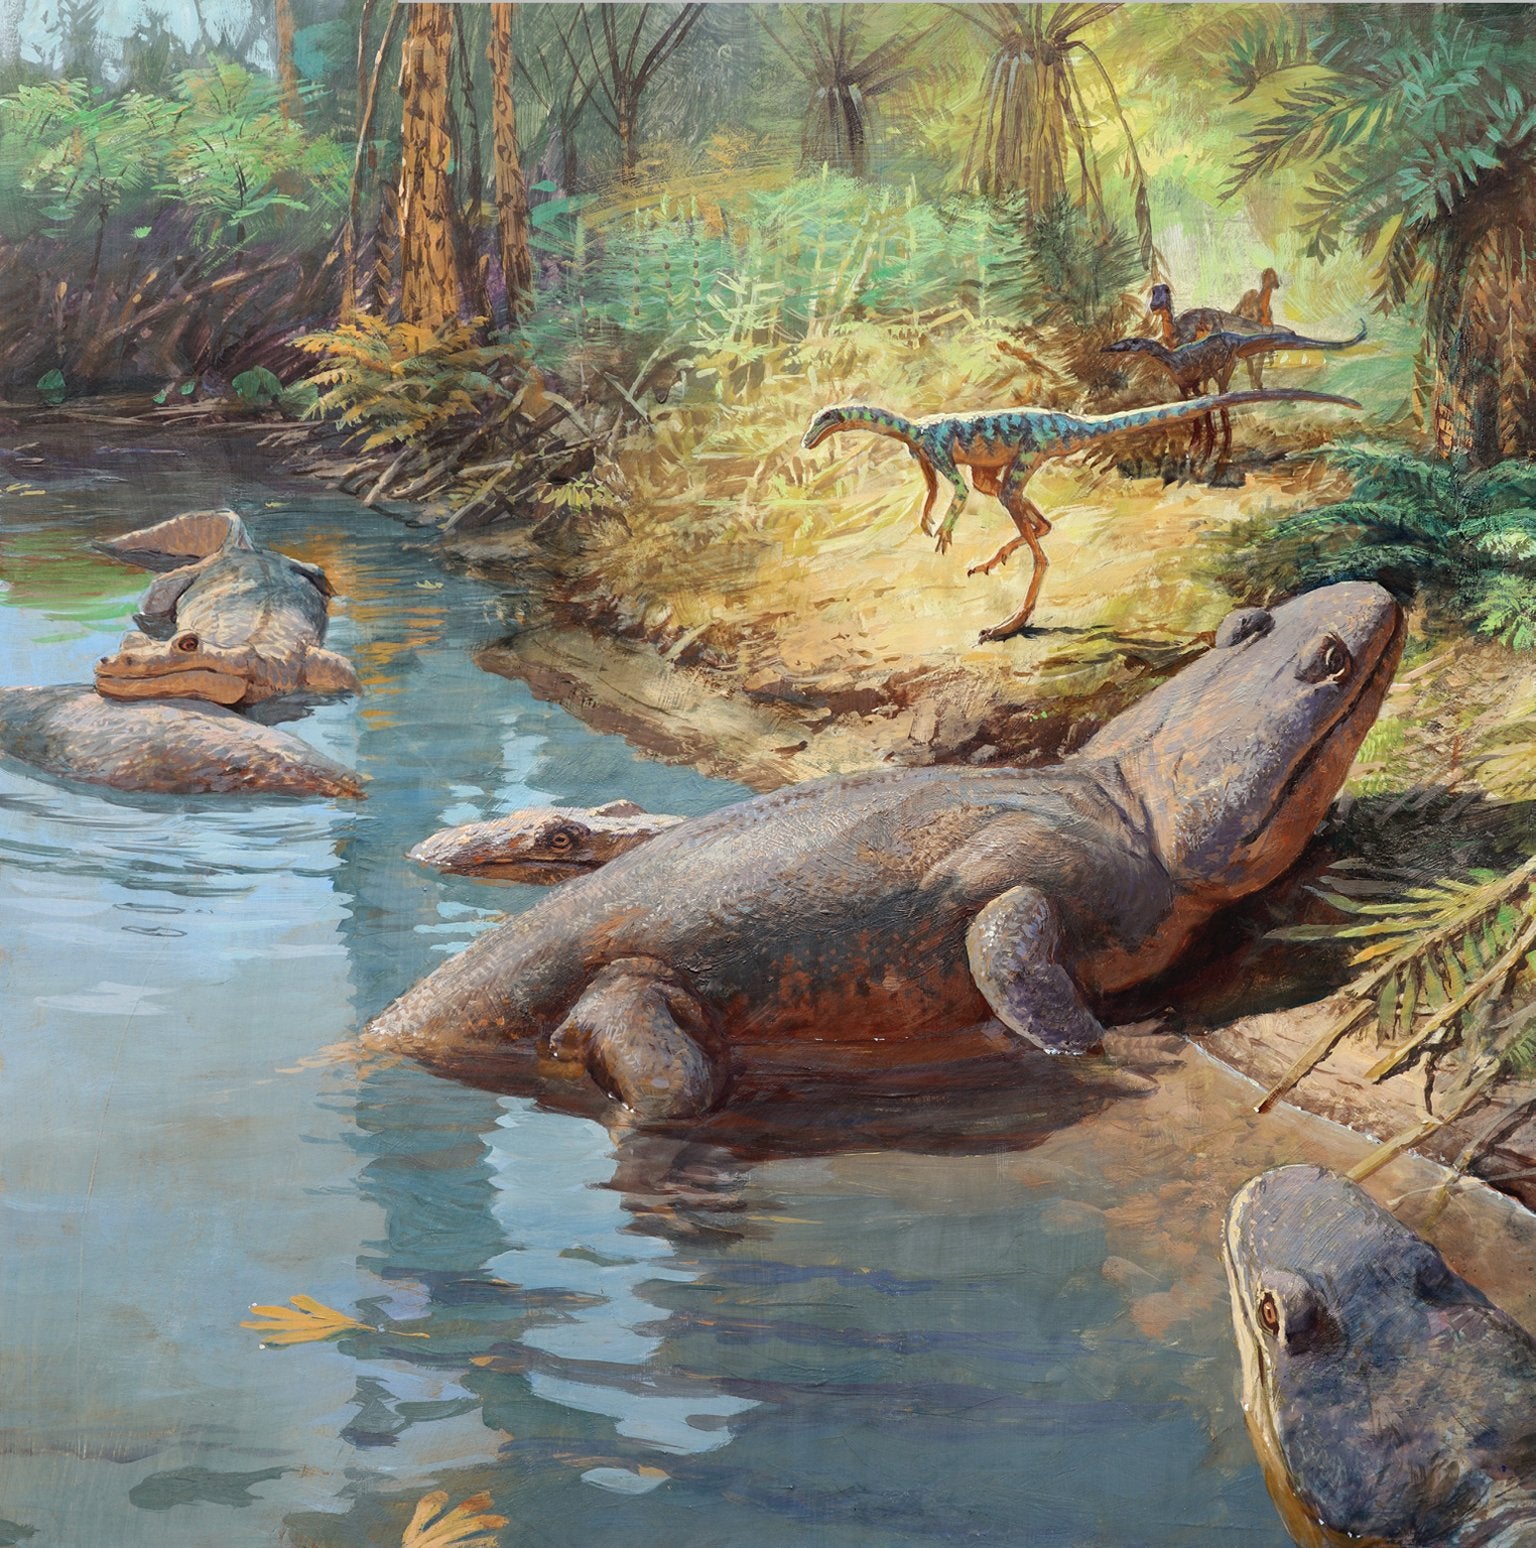 Пресмыкающиеся мезозойской эры. Триасовый период мезозойской эры. Фауна Триасового периода. Динозавры Триасового периода. Триасовый период Триас.